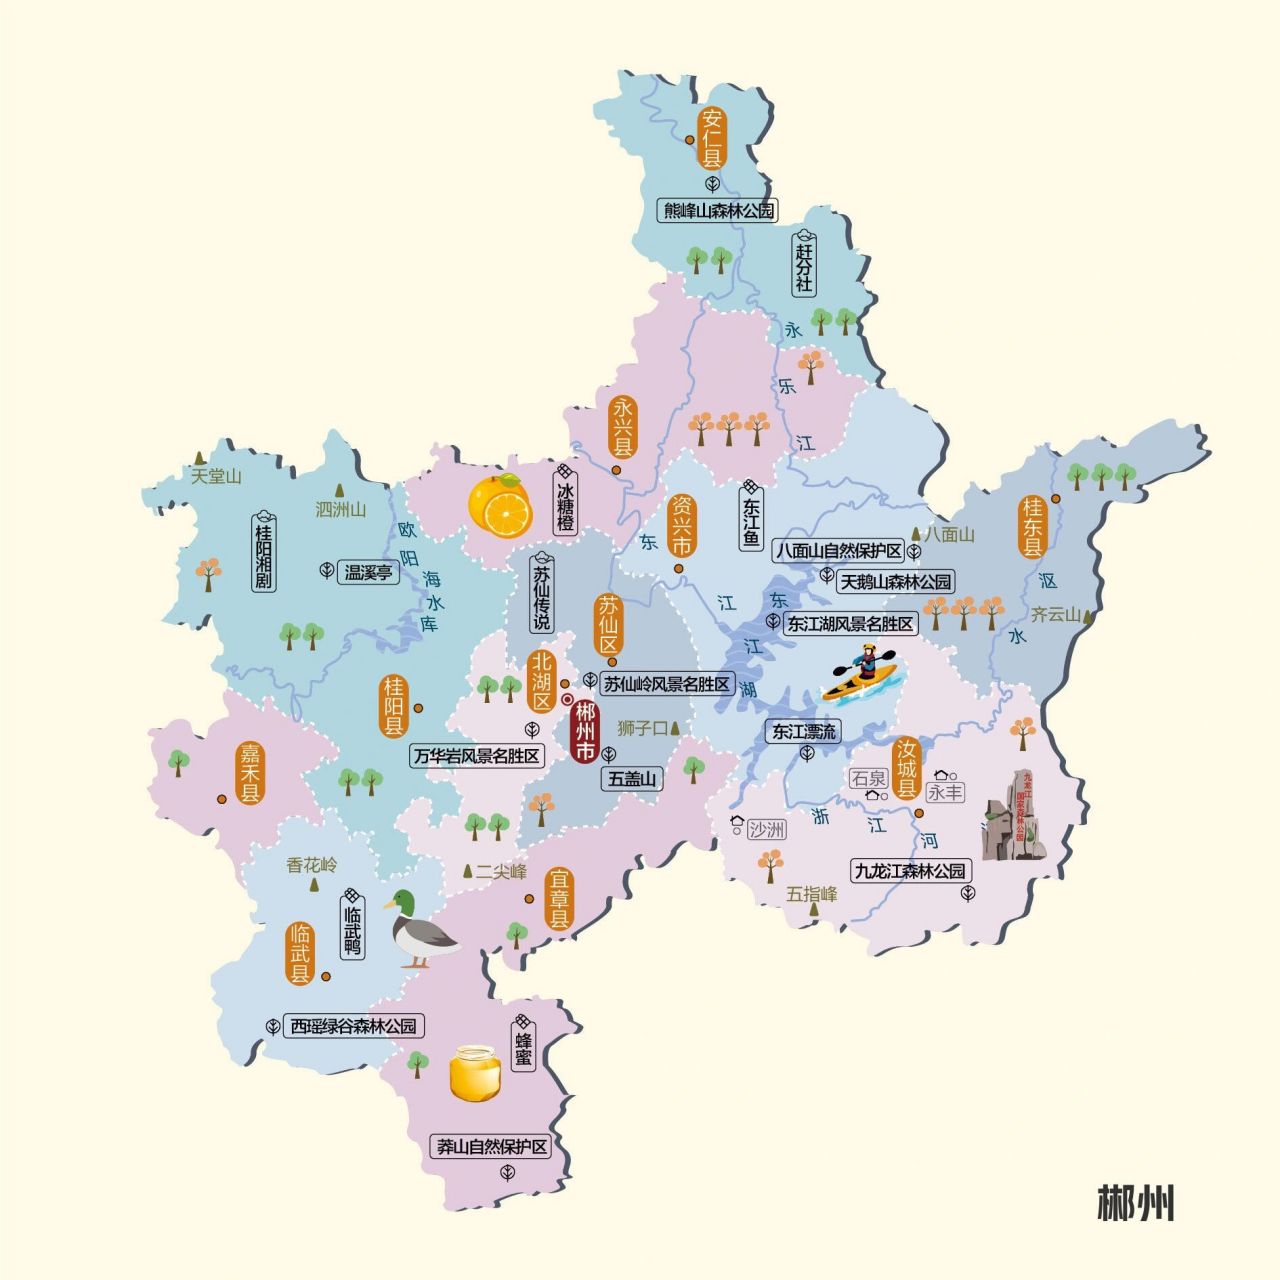 五一游湖南,必备地图之【郴州】 在郴州和去过郴州的老铁,有什么是真